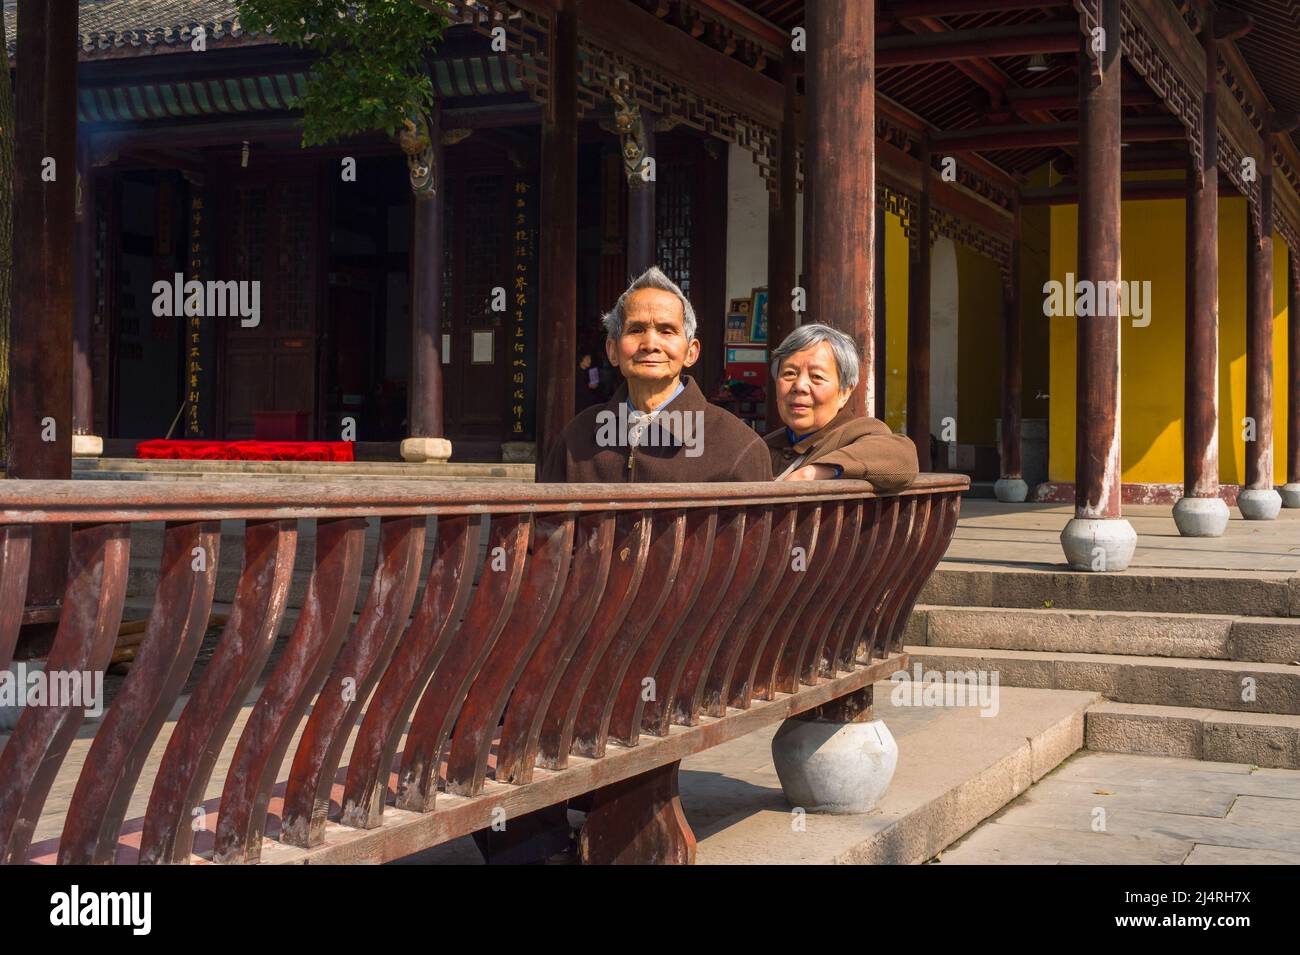 ANQING, CHINA - MARZO de 22: Hombre y Mujer Senior se sientan en un banco largo para tomar un descanso. Una pareja mayor, de 80 años, se sienta en un banco dentro de Jinjiang Tem Foto de stock